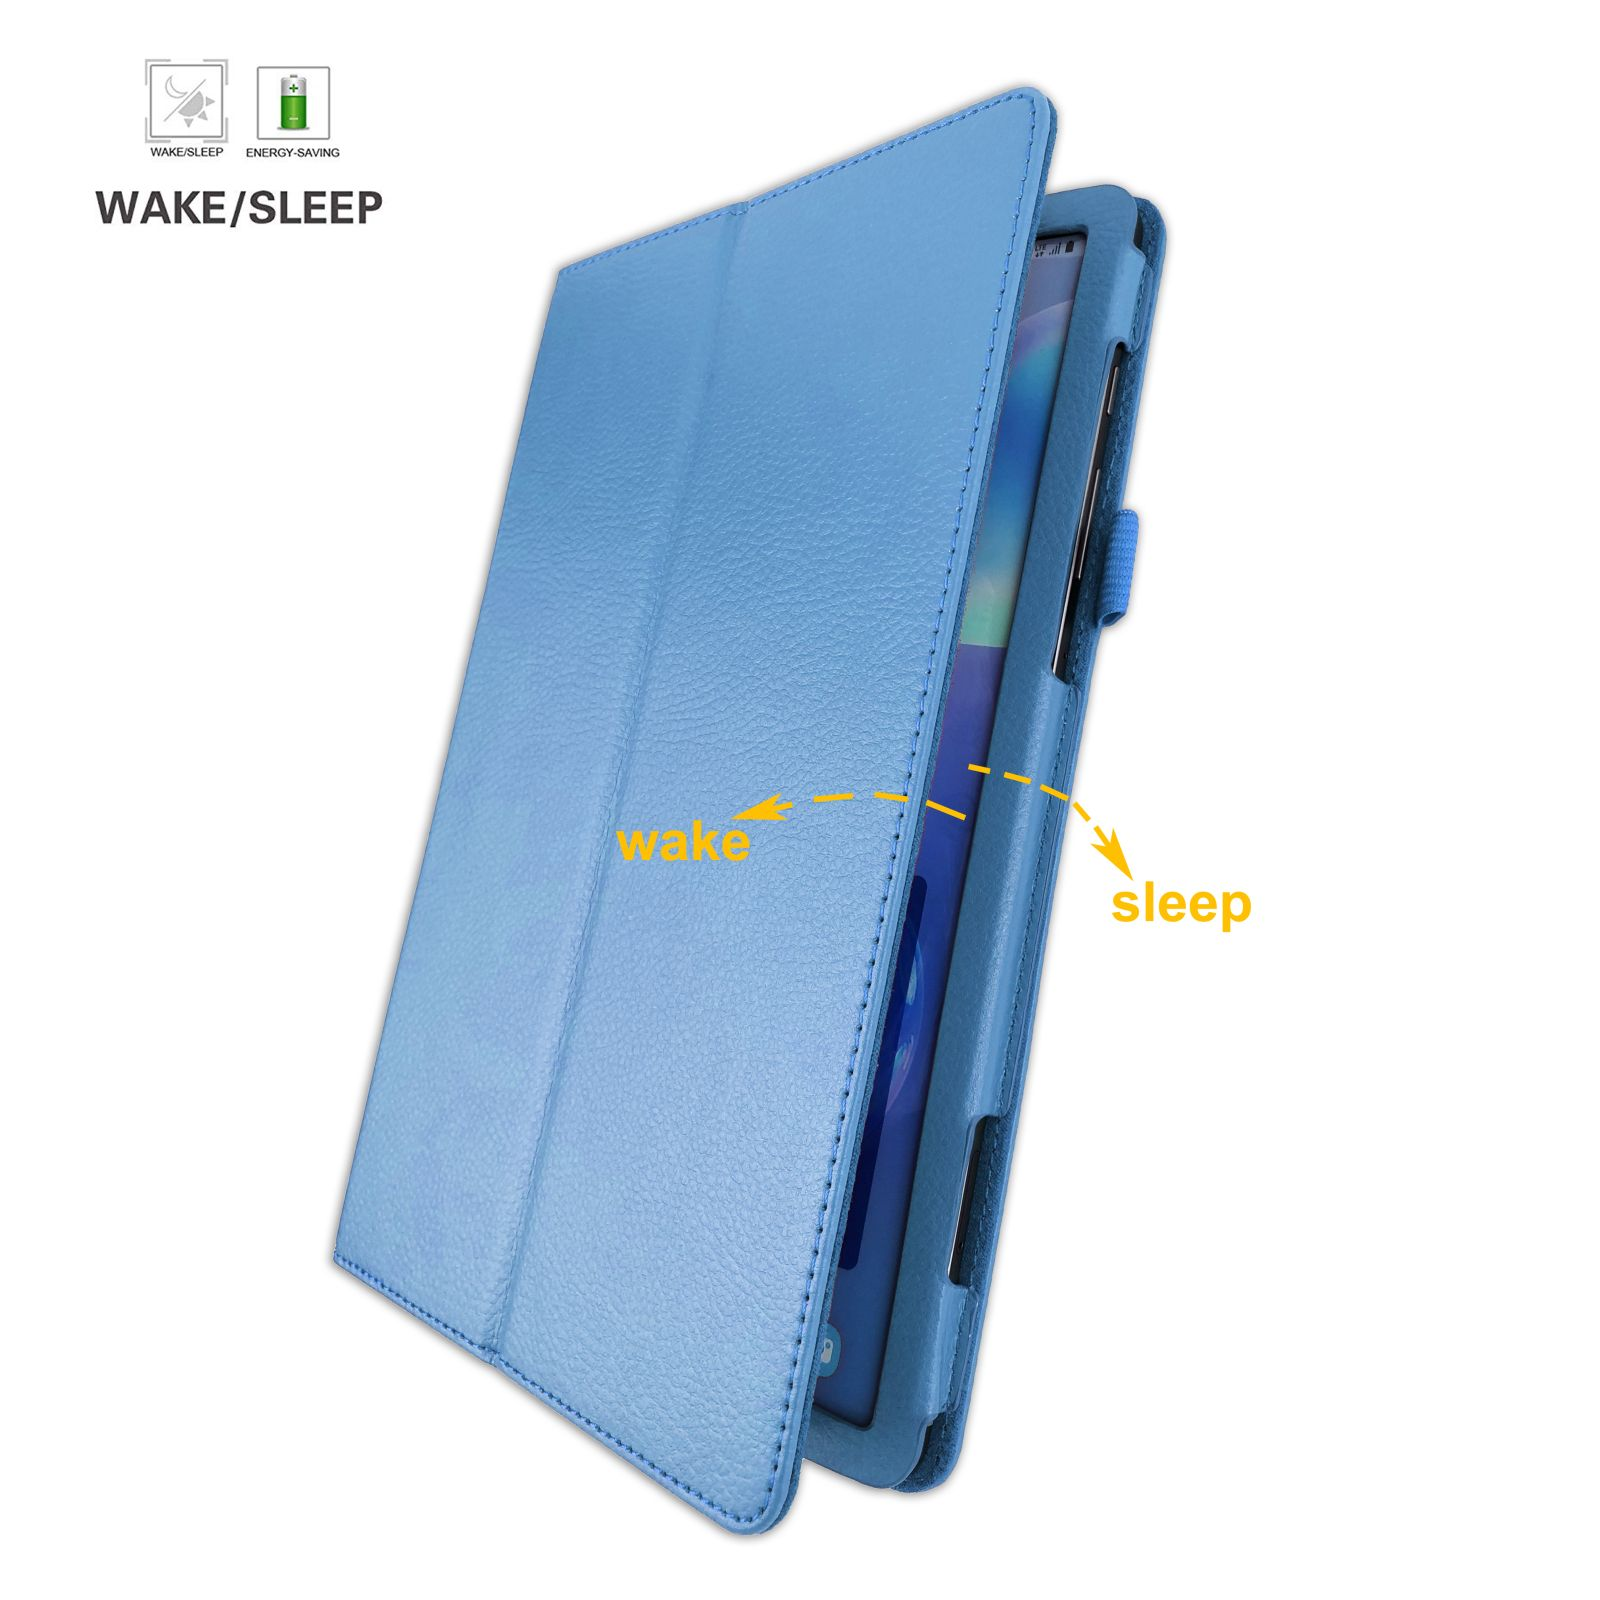 Hülle Samsung SM-T860 Zoll Tab für LOBWERK S6 Galaxy 10.5 Kunstleder, Bookcover Hellblau Schutzhülle